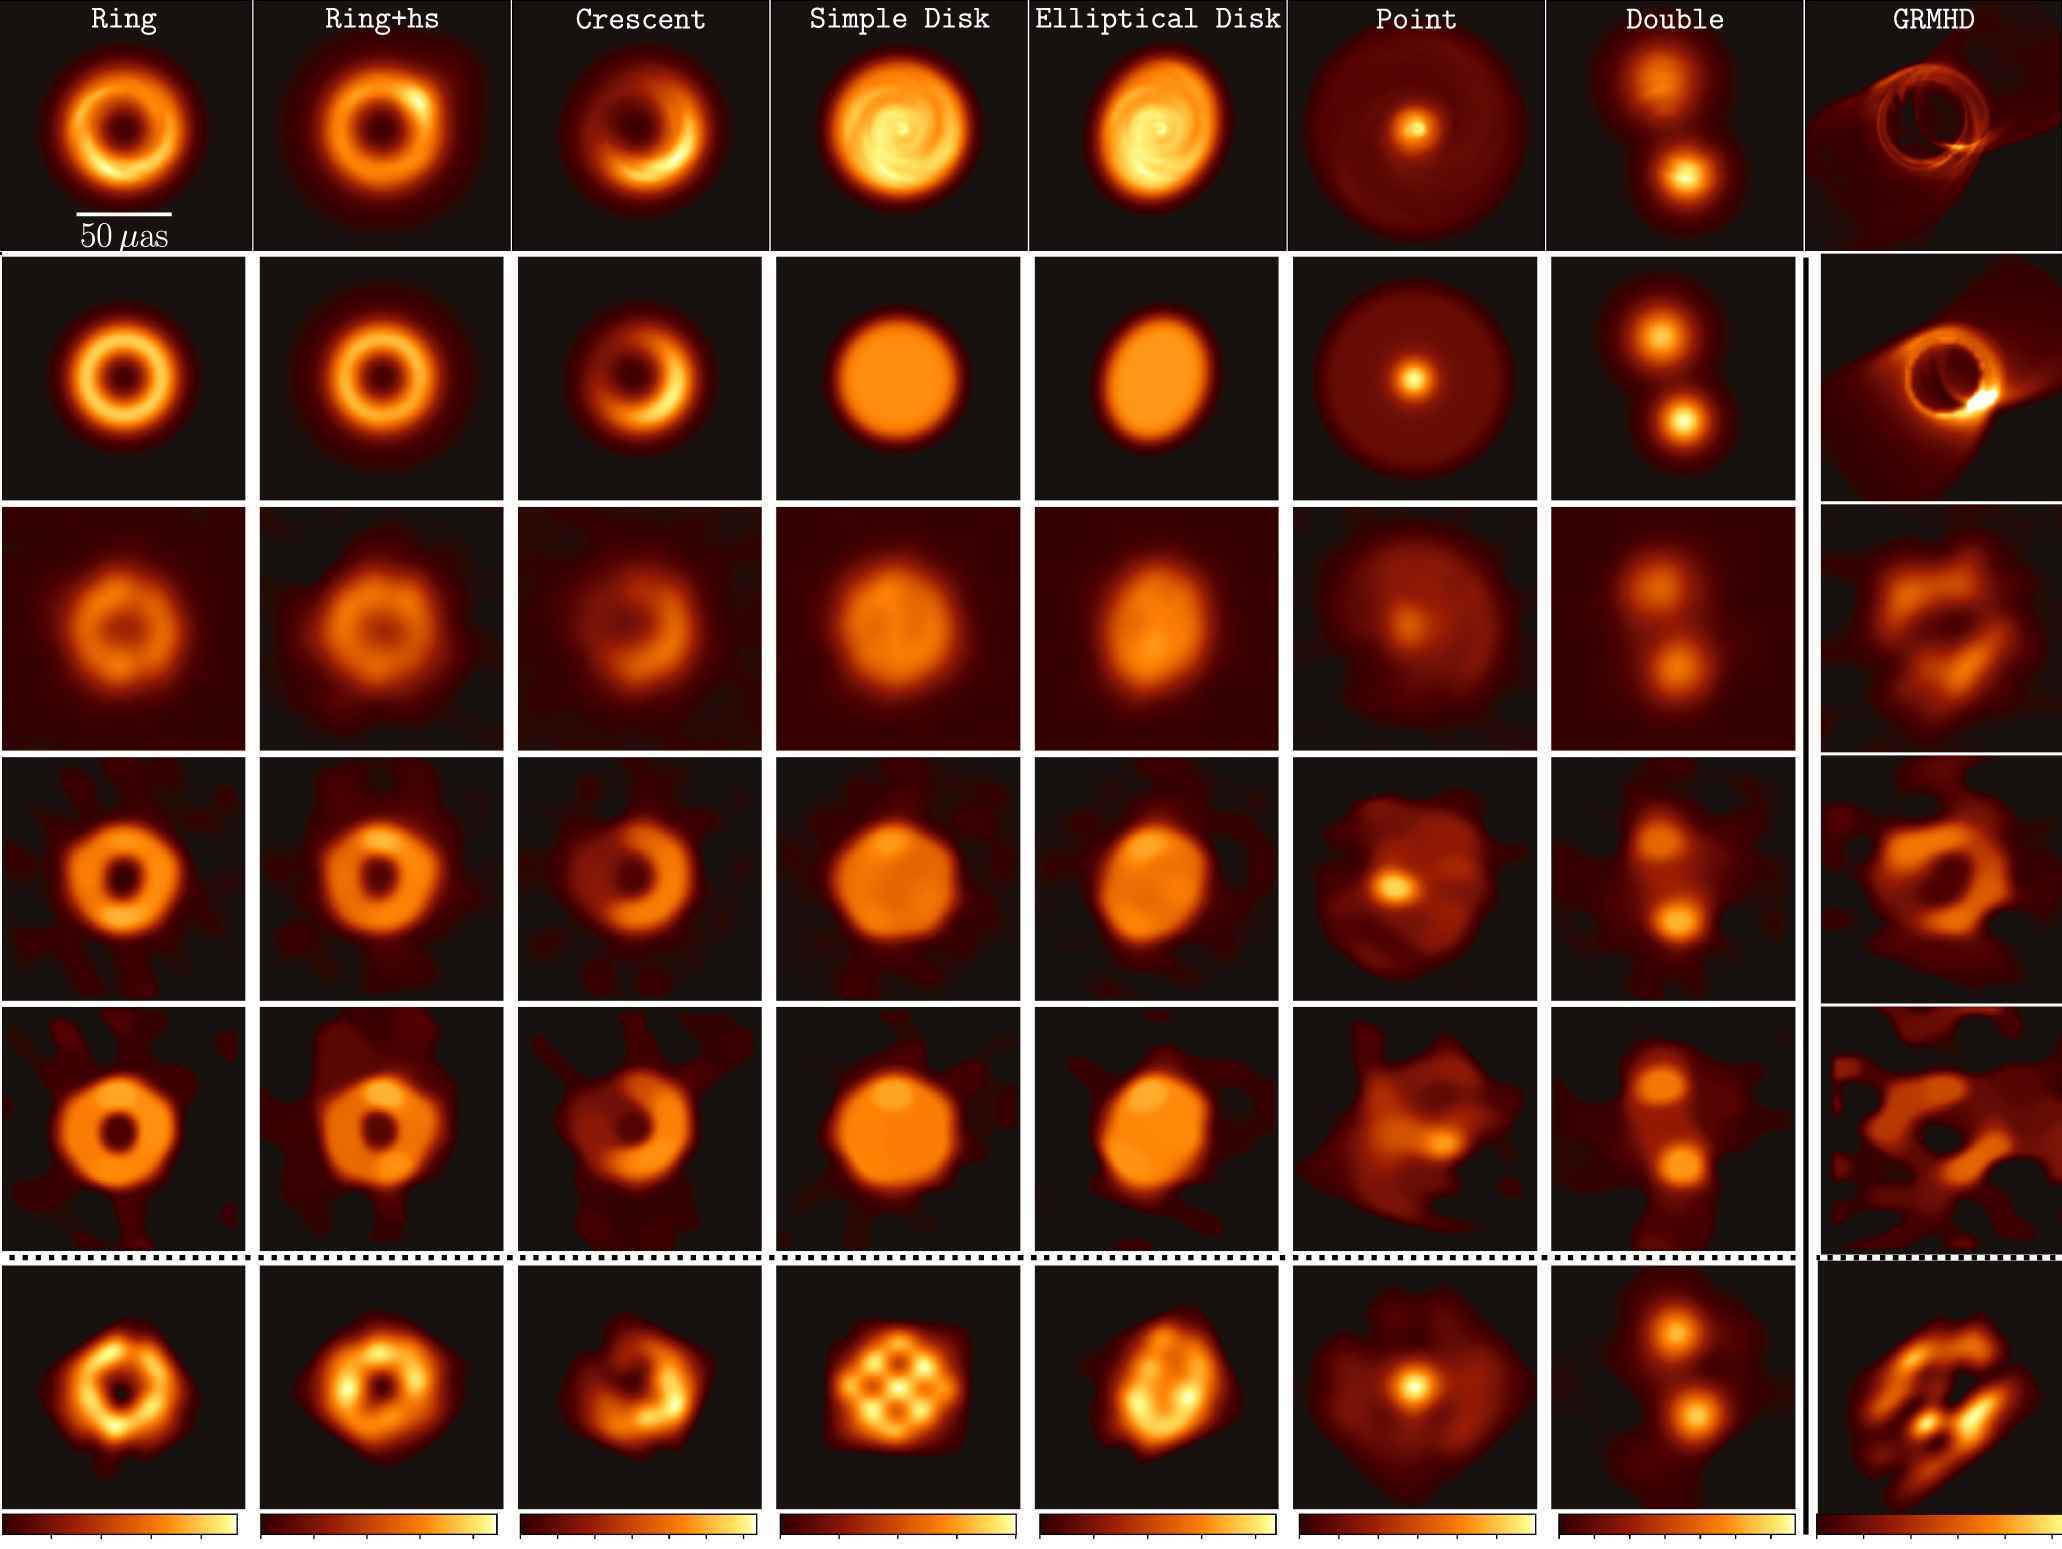 Simüle edilmiş kara deliklerin görüntüleri ve verilerinin Dünya'daki sensörlere nasıl görünebileceği.